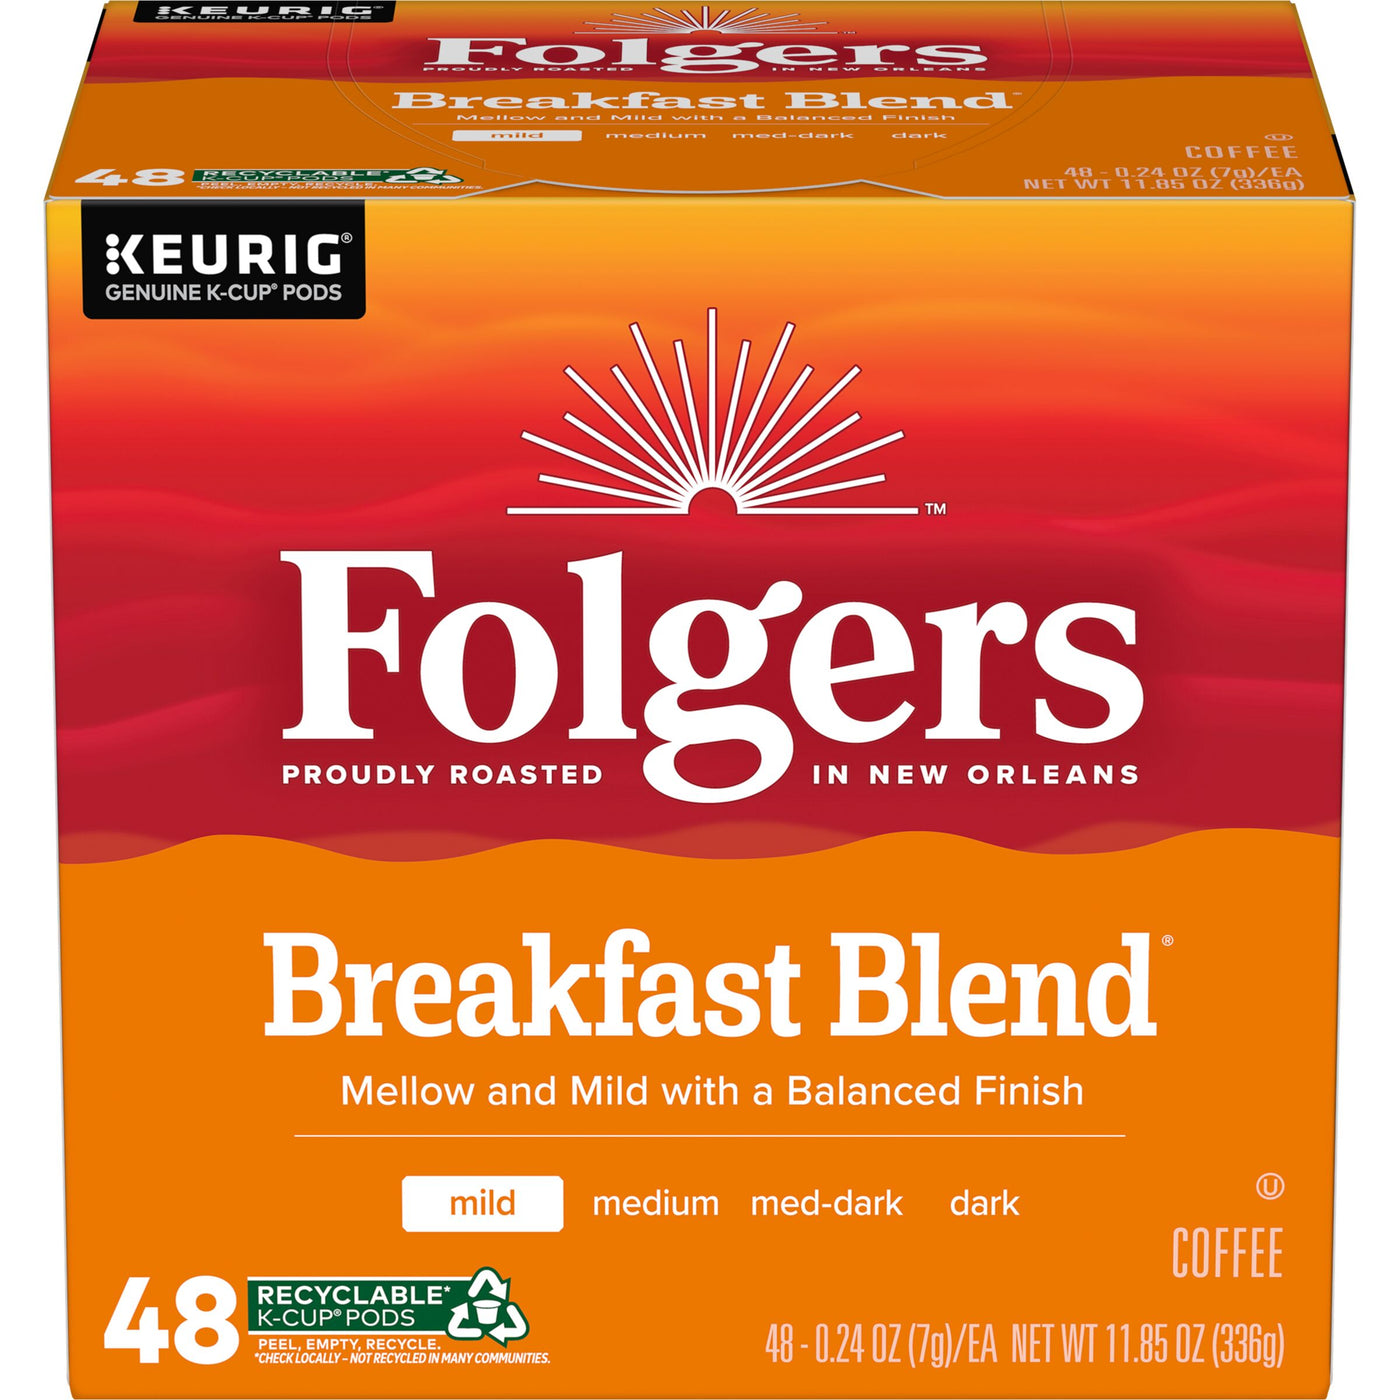 Folgers Breakfast Blend, Mild Roast Coffee, K-Cup Pods